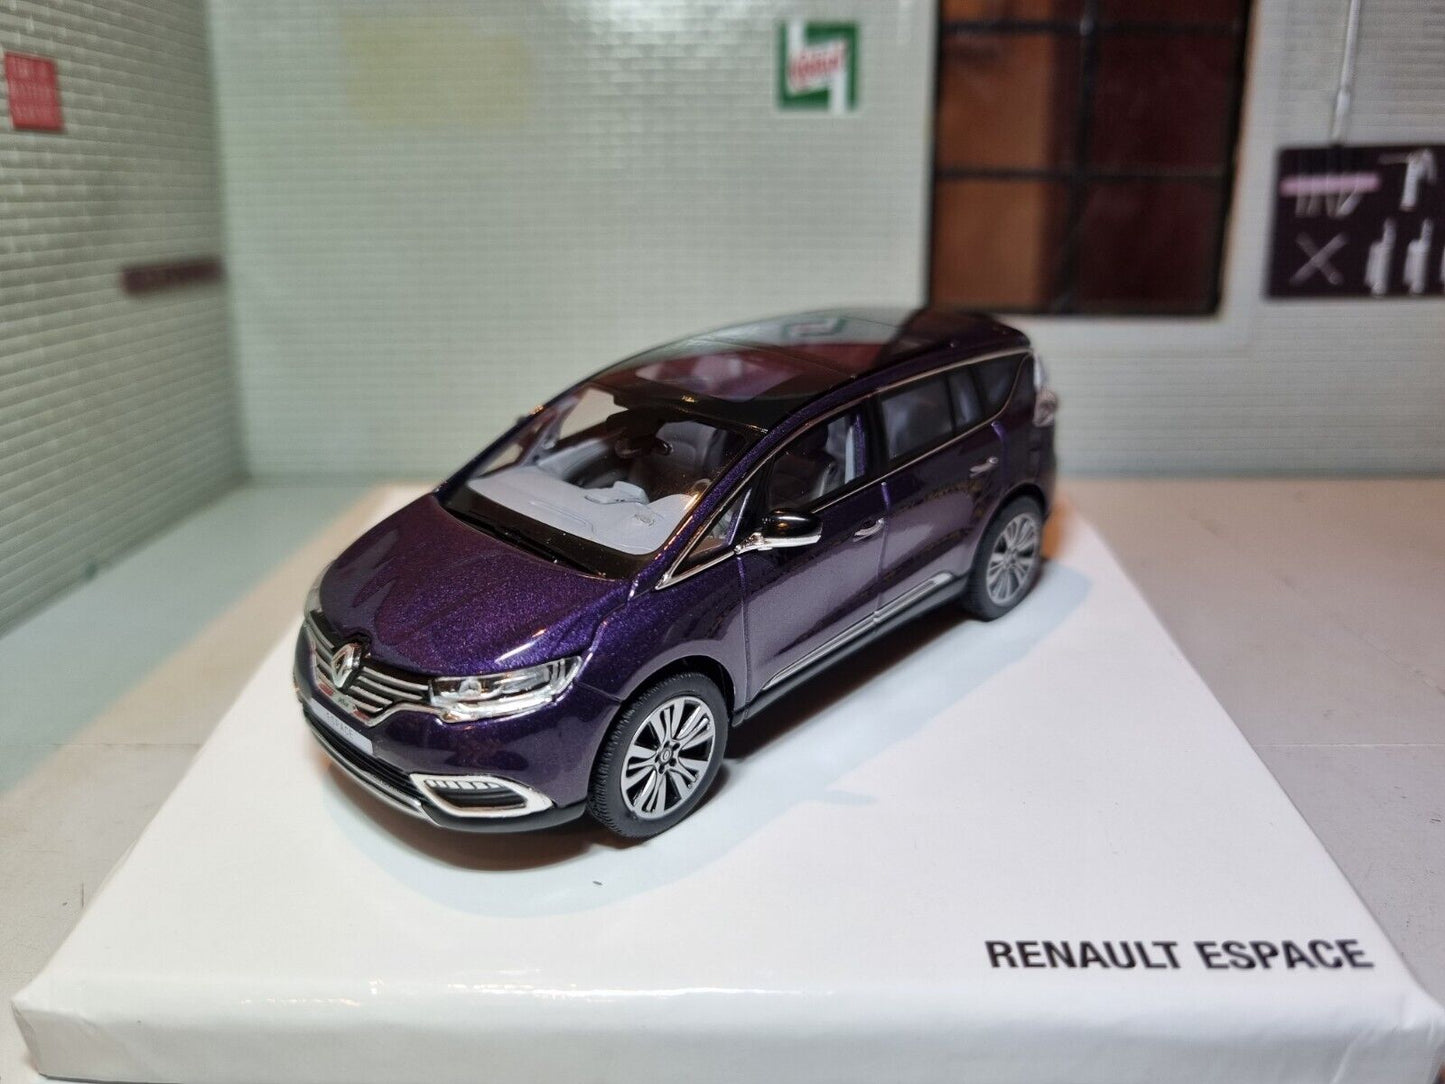 Renault 2015 Espace V Initiale Paris Concept Norev 1:43